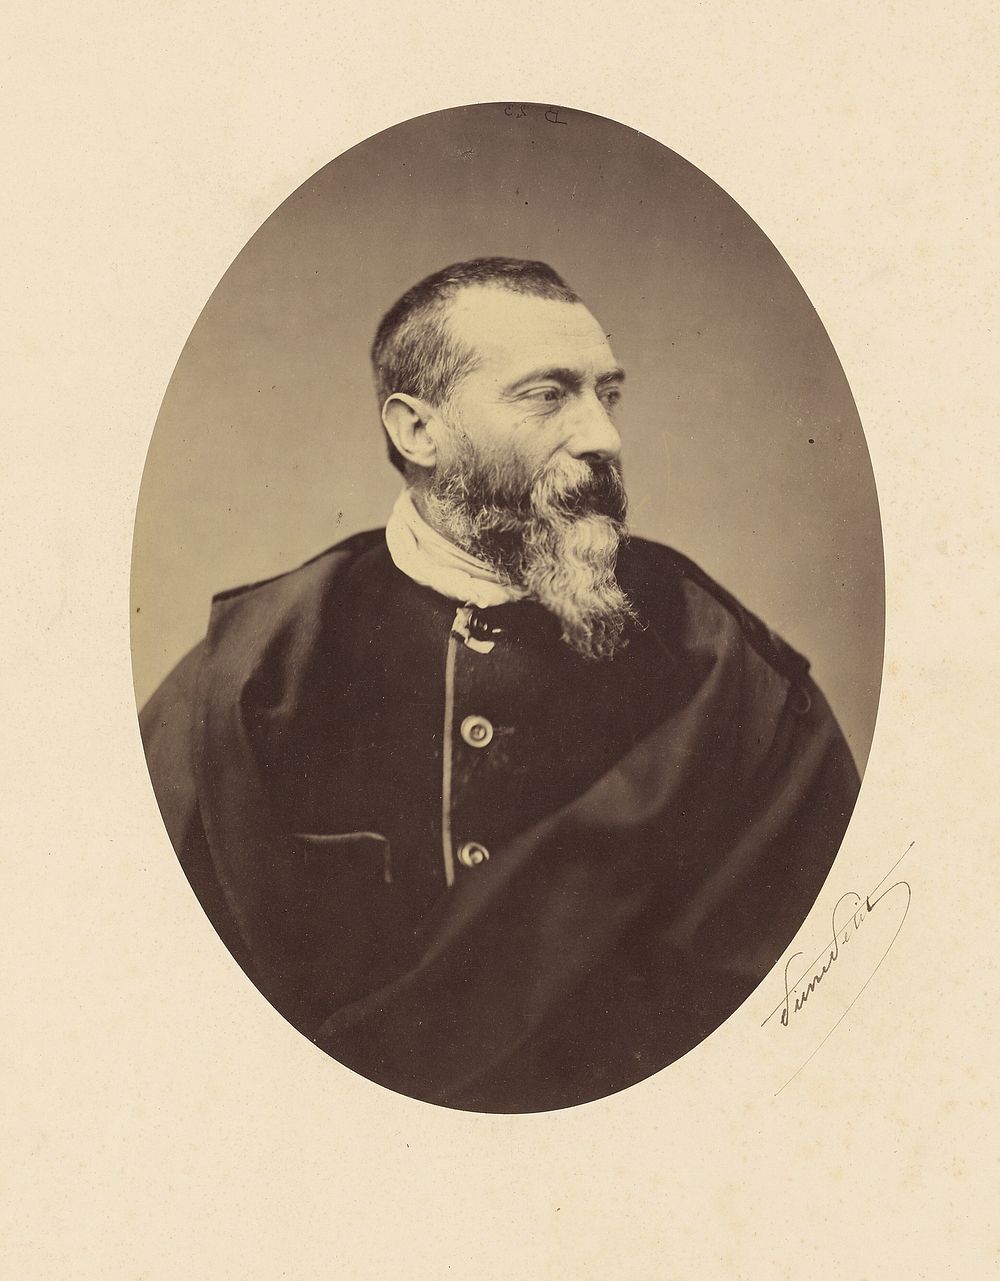 Portrait of Jean-Baptiste Alphonse Karr by Pierre Petit